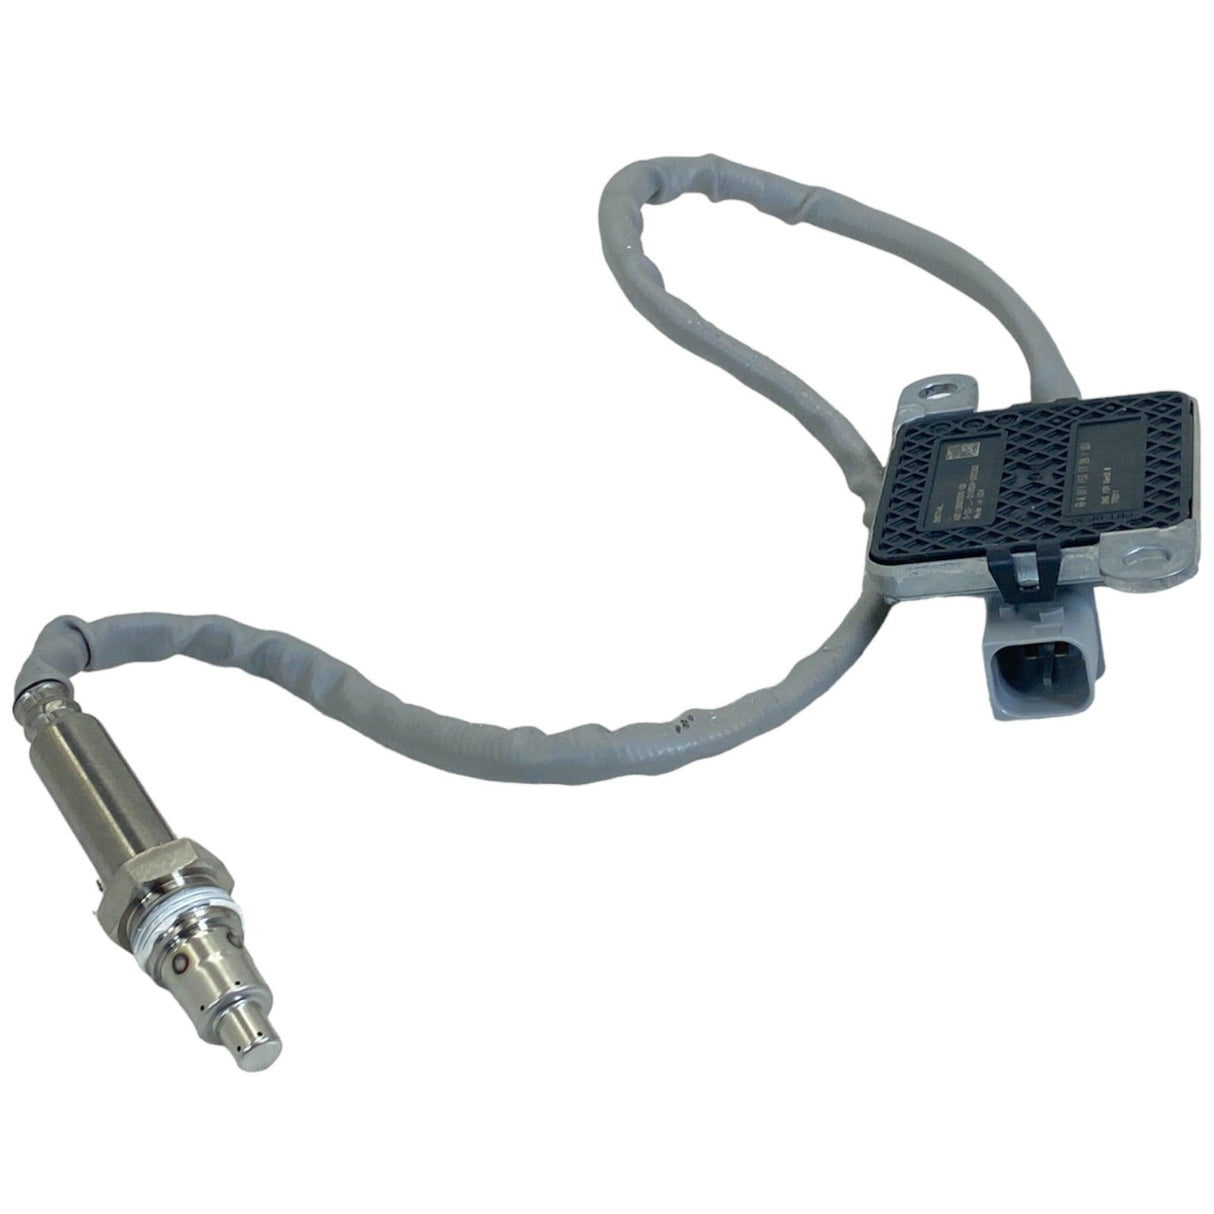 RA0111531728 Genuine Detroit Diesel Outlet NOX Sensor